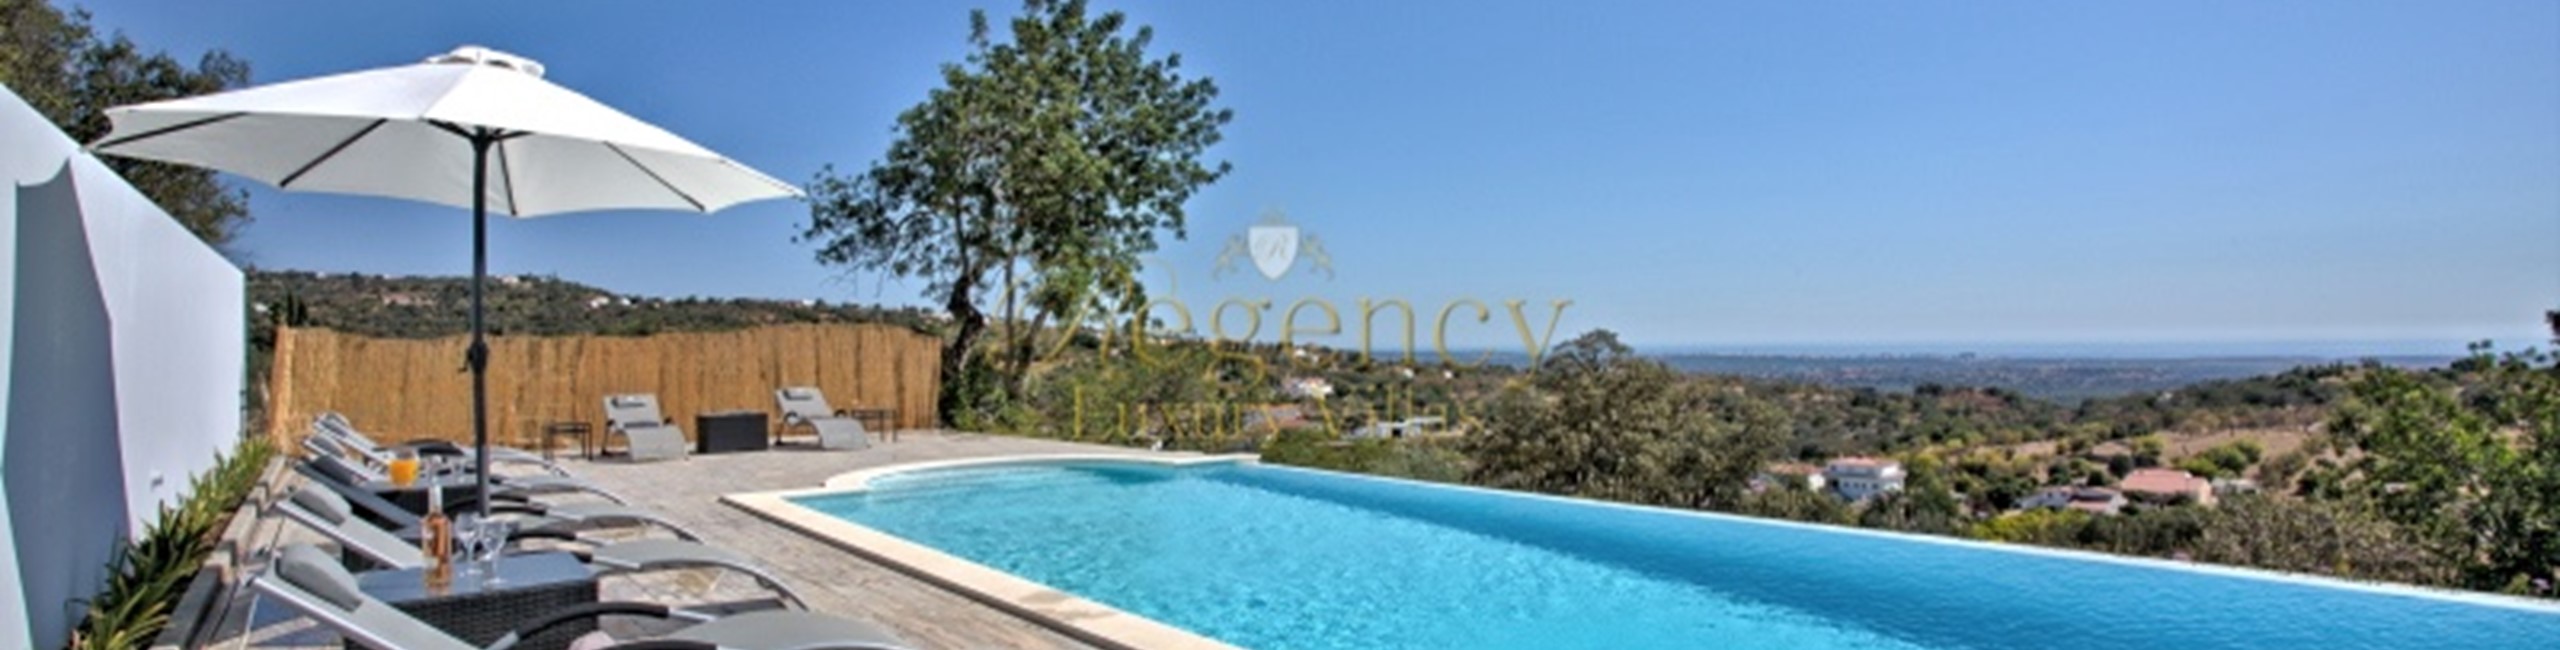 Villas To Rent In The Algarve